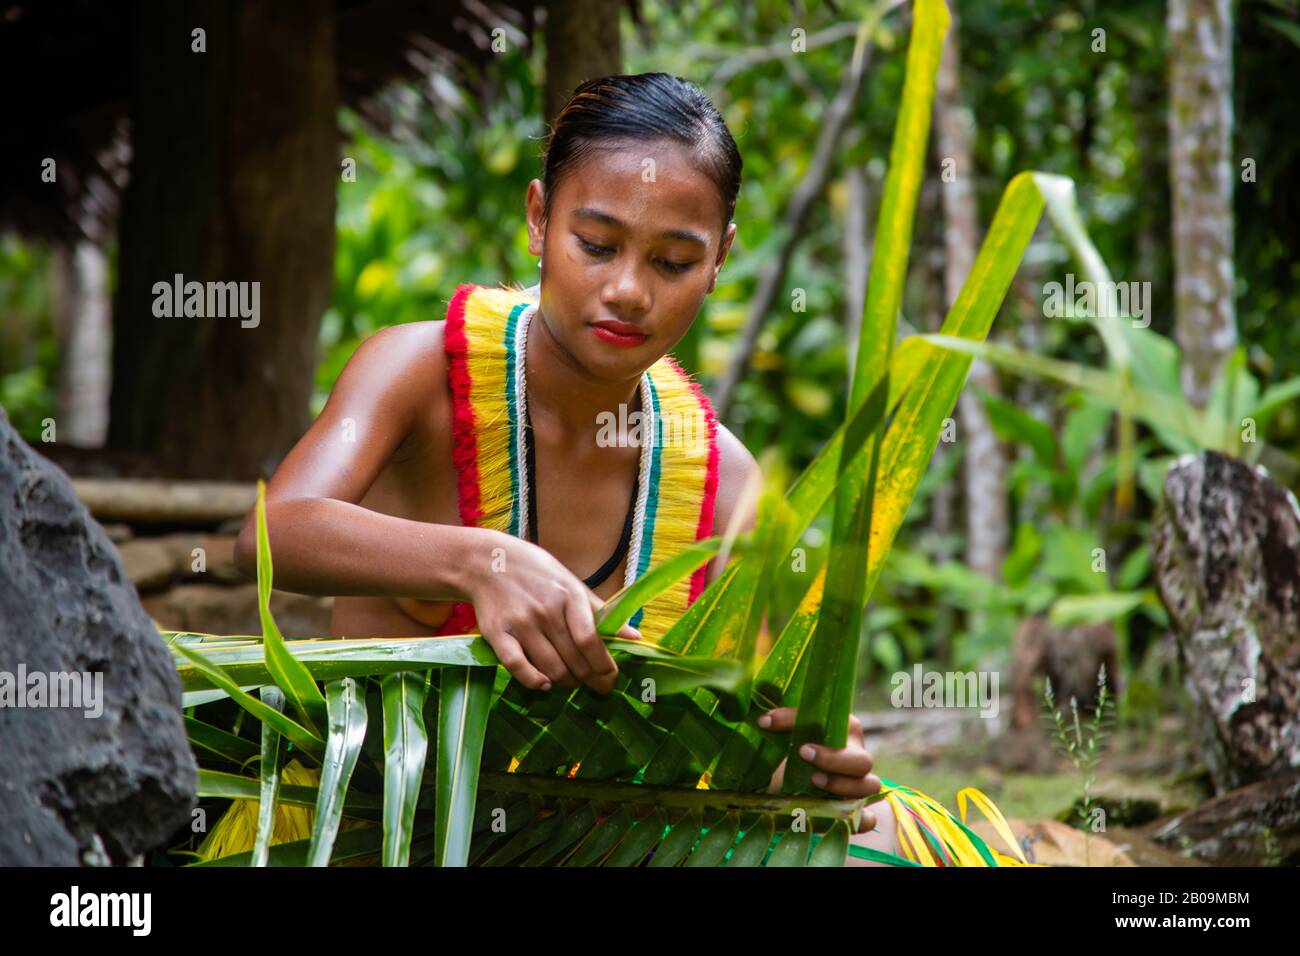 Diese junge Frau (MR) ist in einem traditionellen Outfit für kulturelle Cerimonies und webt einen Korb aus einer Palmfront auf der Insel Yap, Mikronesien. Stockfoto